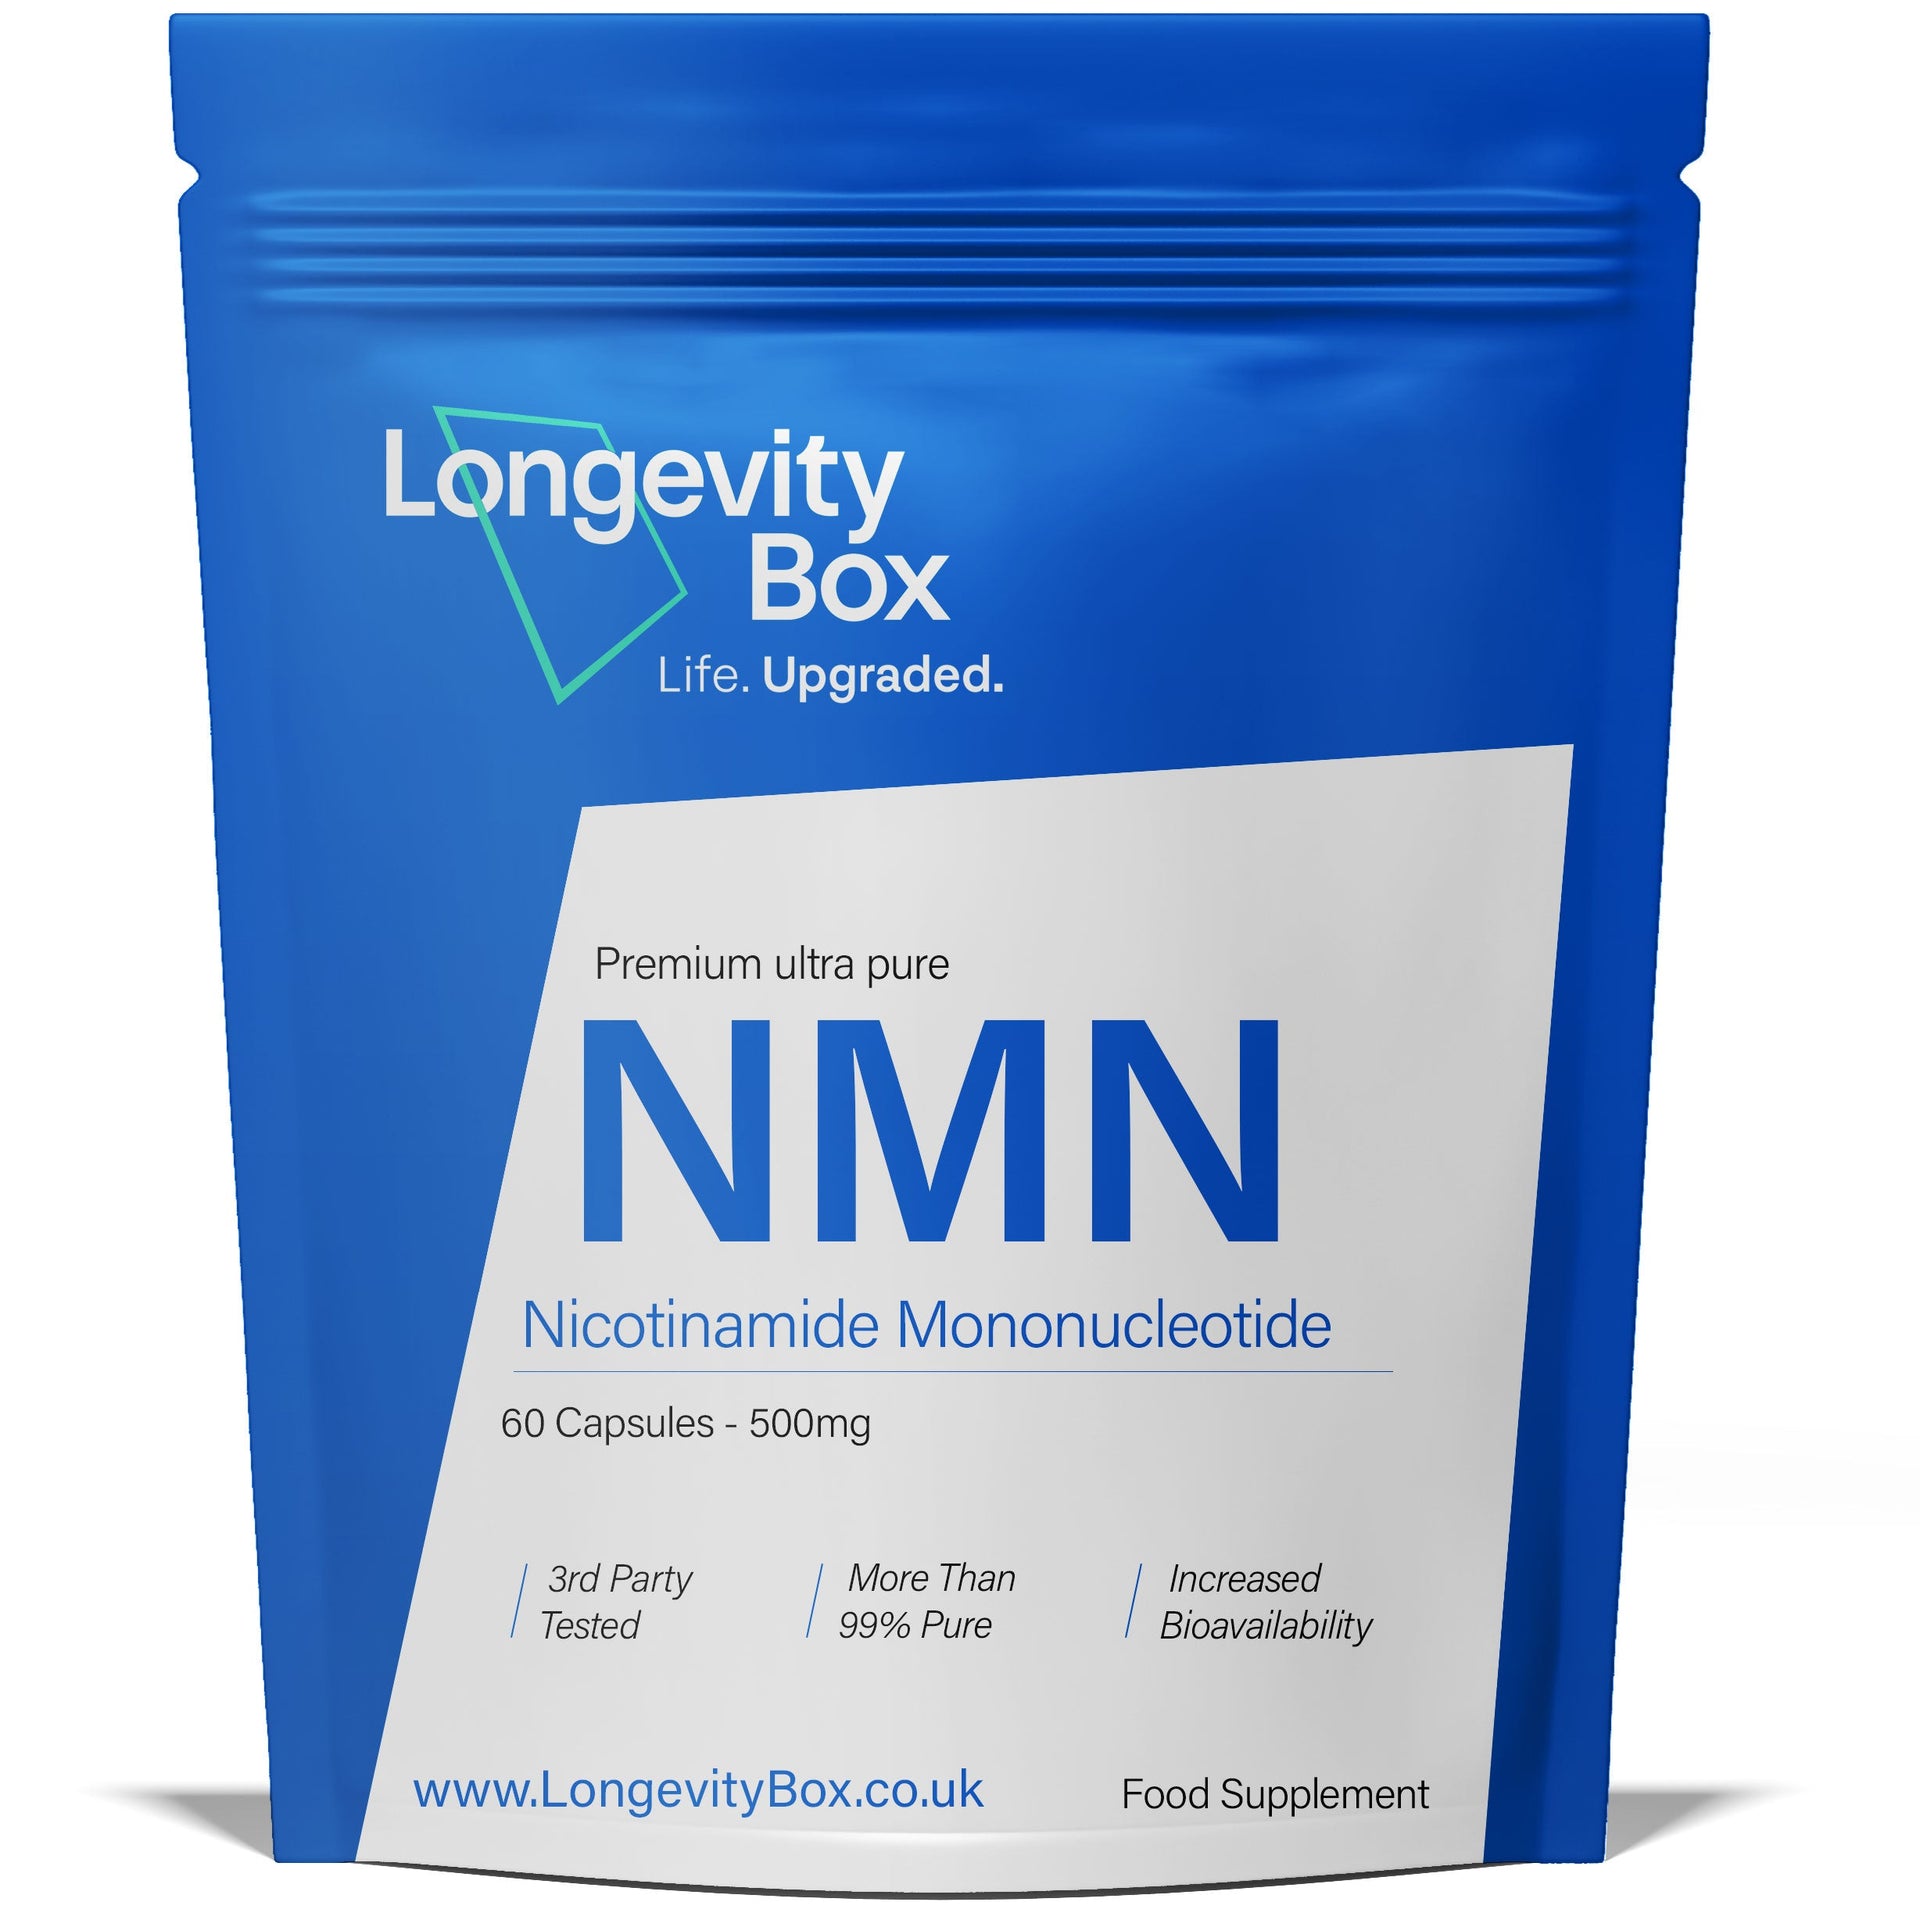 Best Sellers Bundle - Our top 5 Longevity supplements - Longevity Box